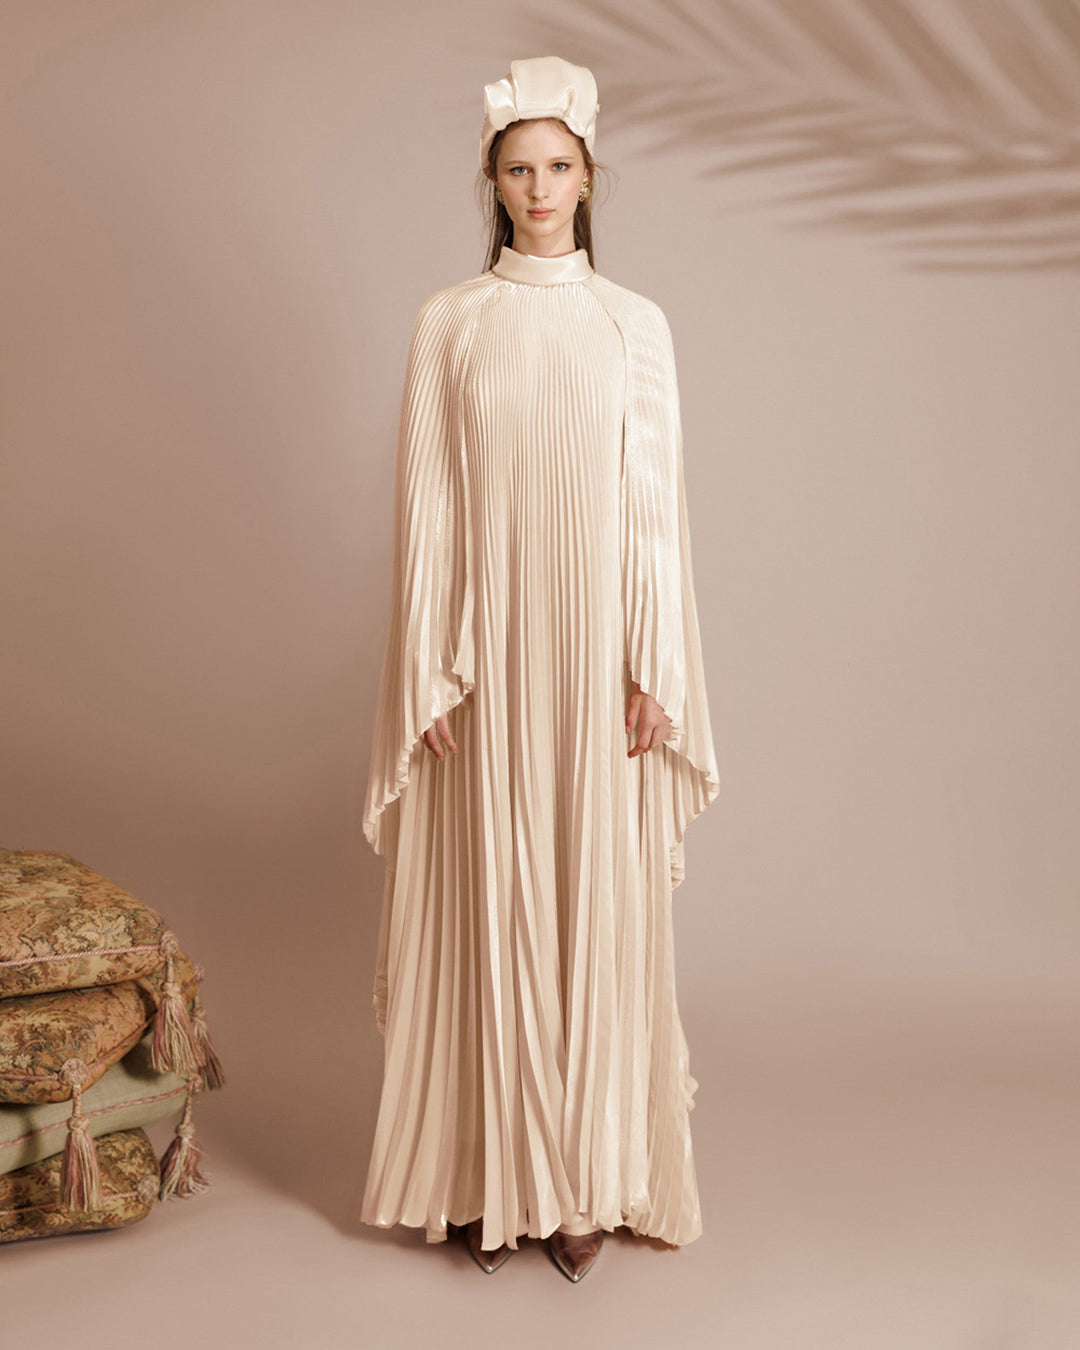 Cape-Like Sleeves Ivory Dress - FOSTANI